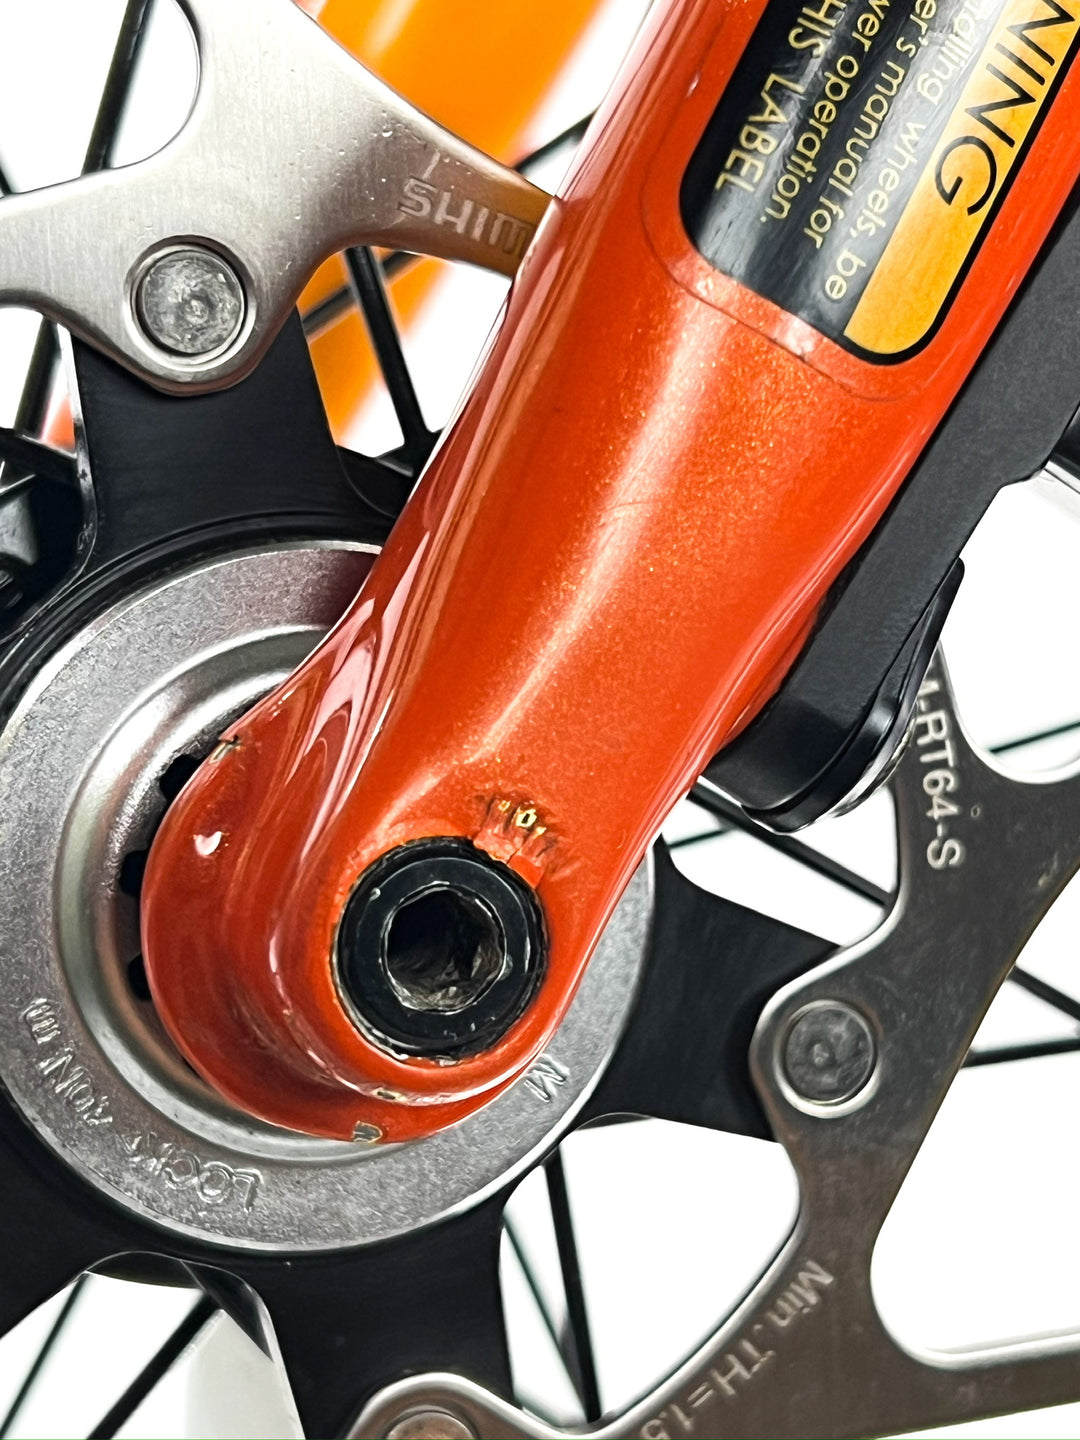 Cannondale SuperX 1, Shimano GRX, Carbon Gravel / Cyclocross Bike-2021, 51cm